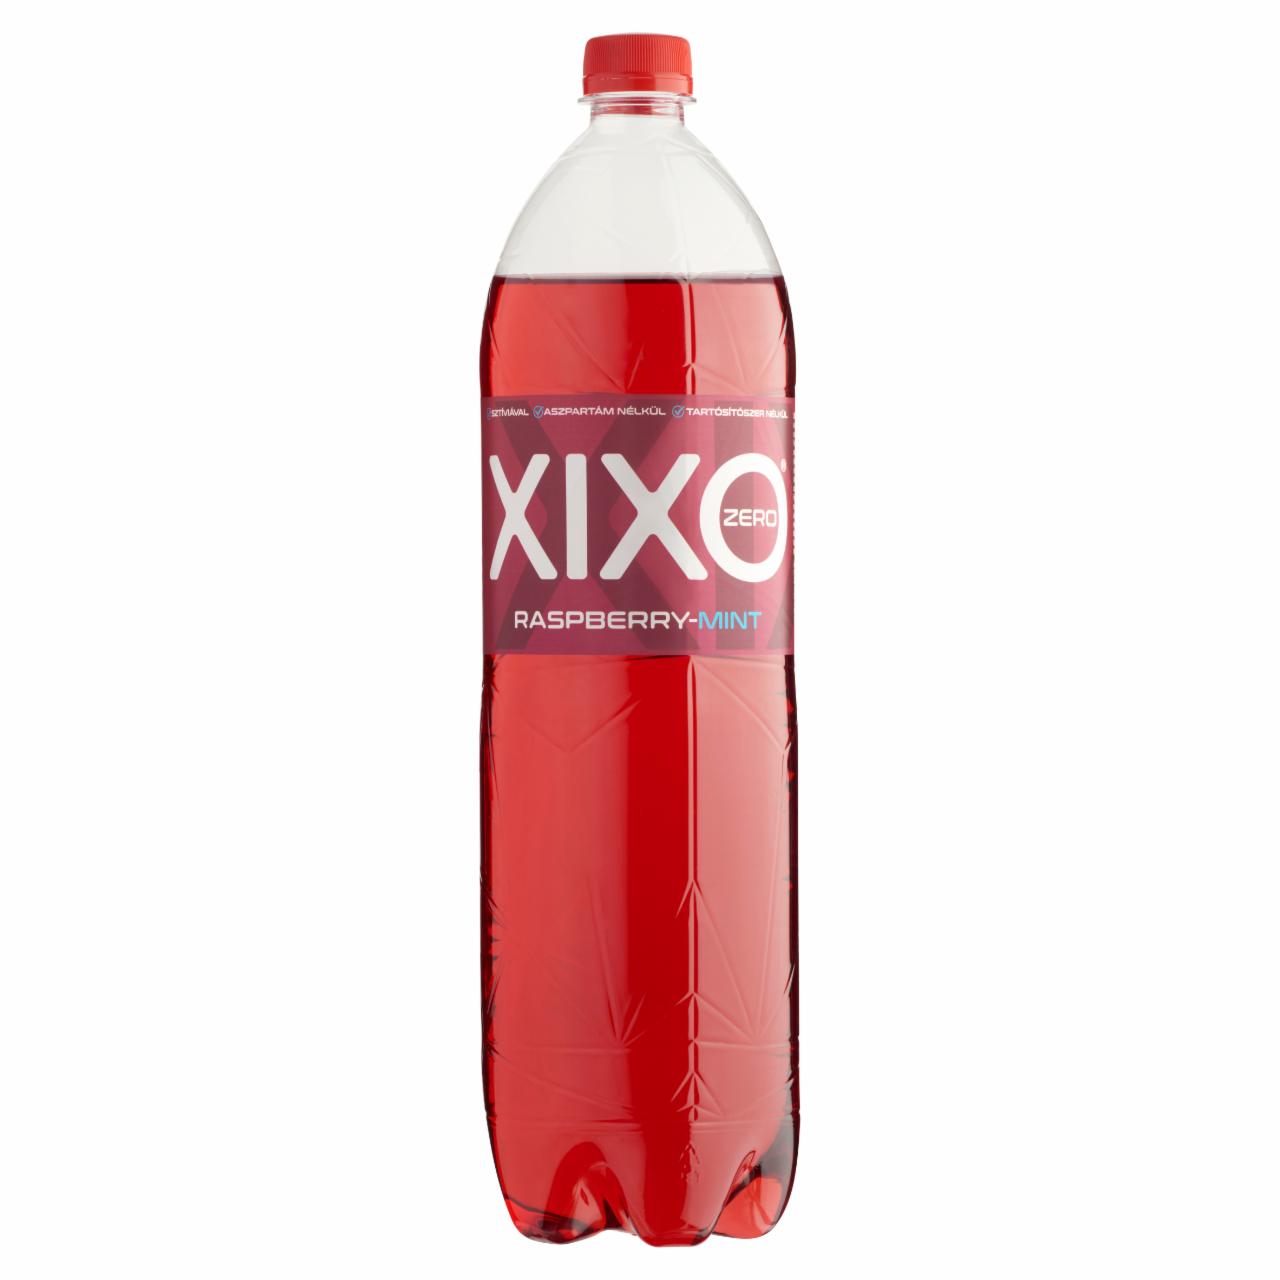 Képek - XIXO Raspberry-Mint Zero málna és menta ízű, cukormentes, szénsavas üdítőital édesítőszerekkel 1,5 l